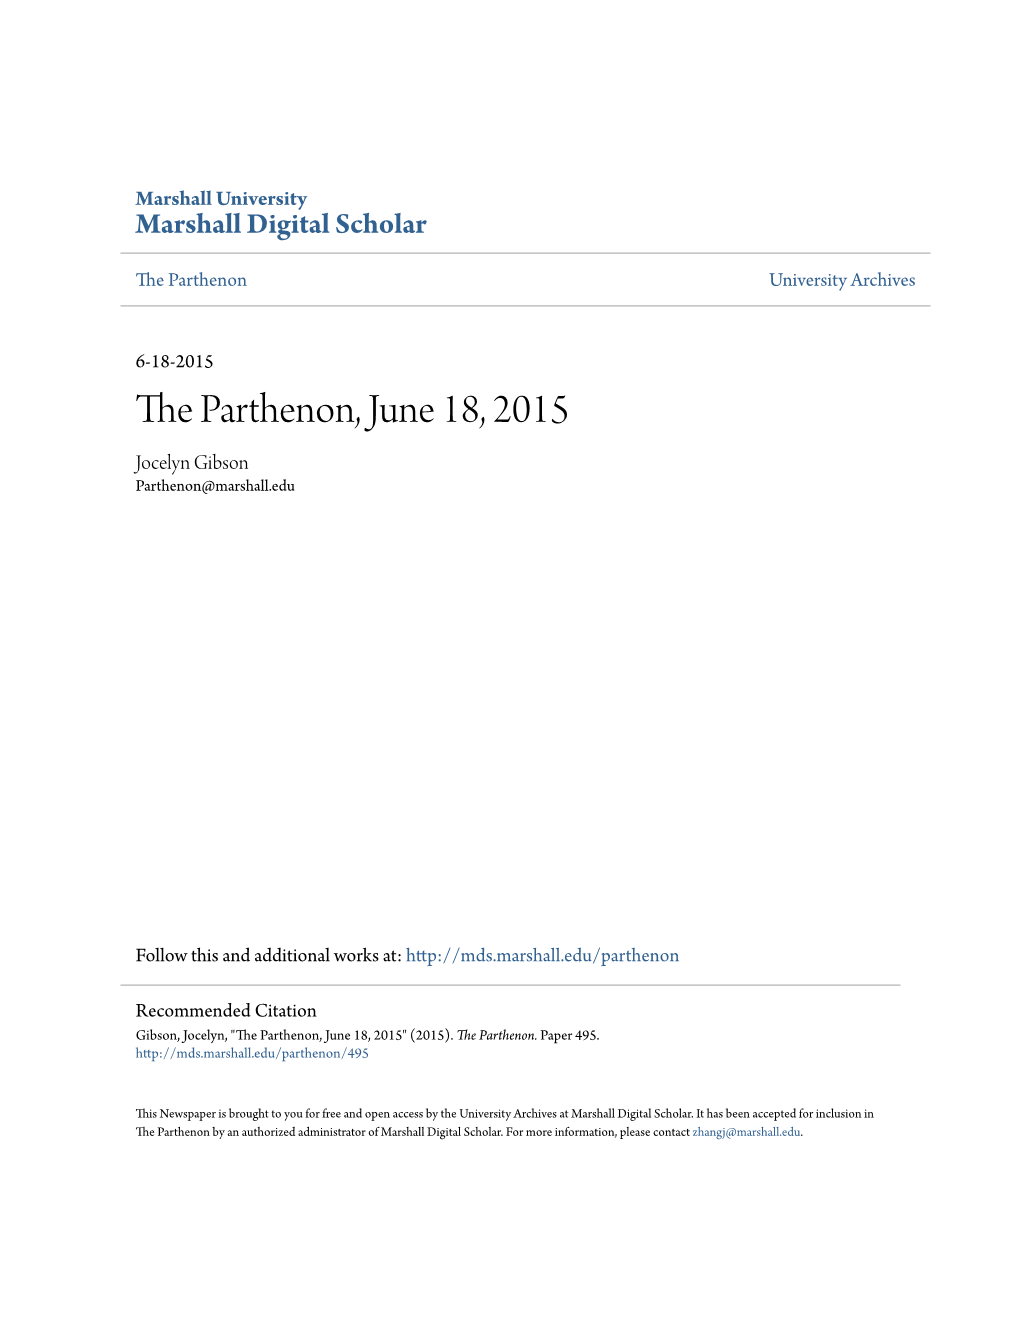 The Parthenon, June 18, 2015